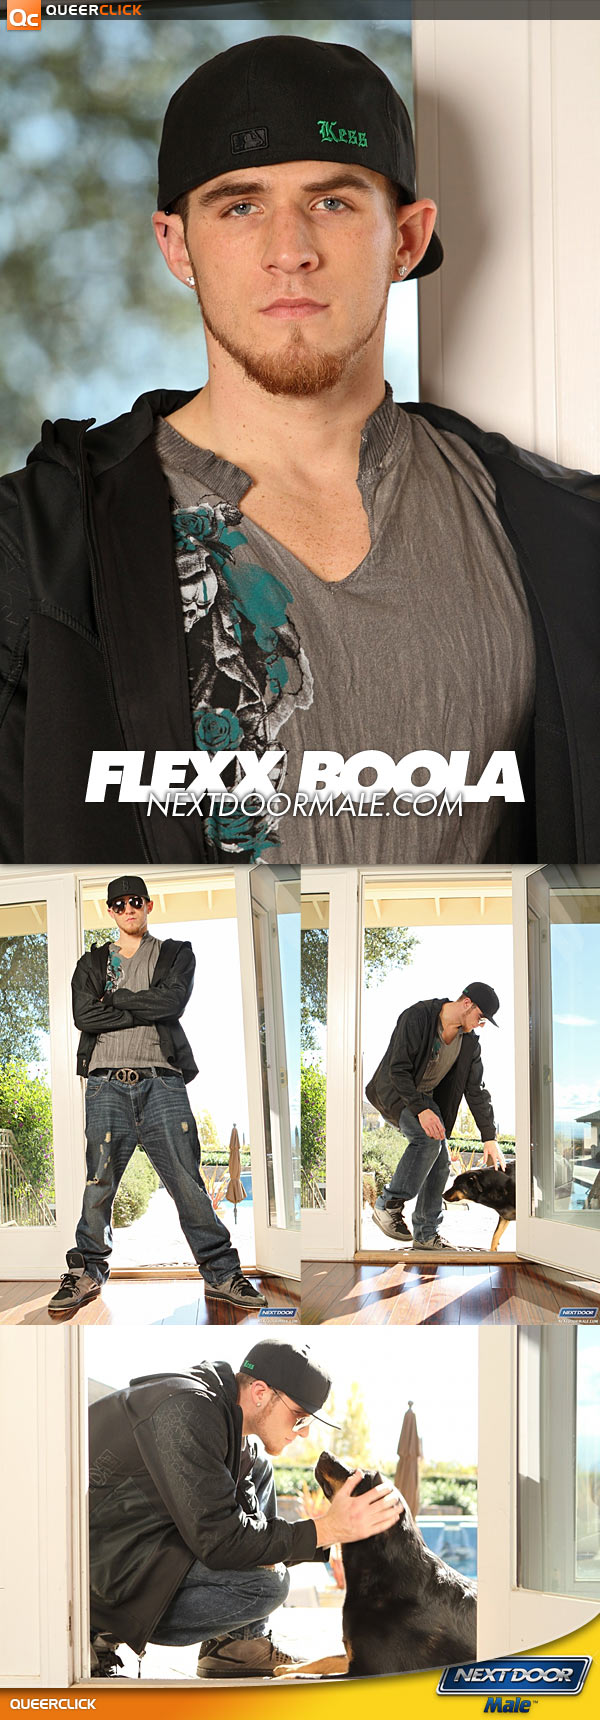 Next Door Male: Flexx Boola